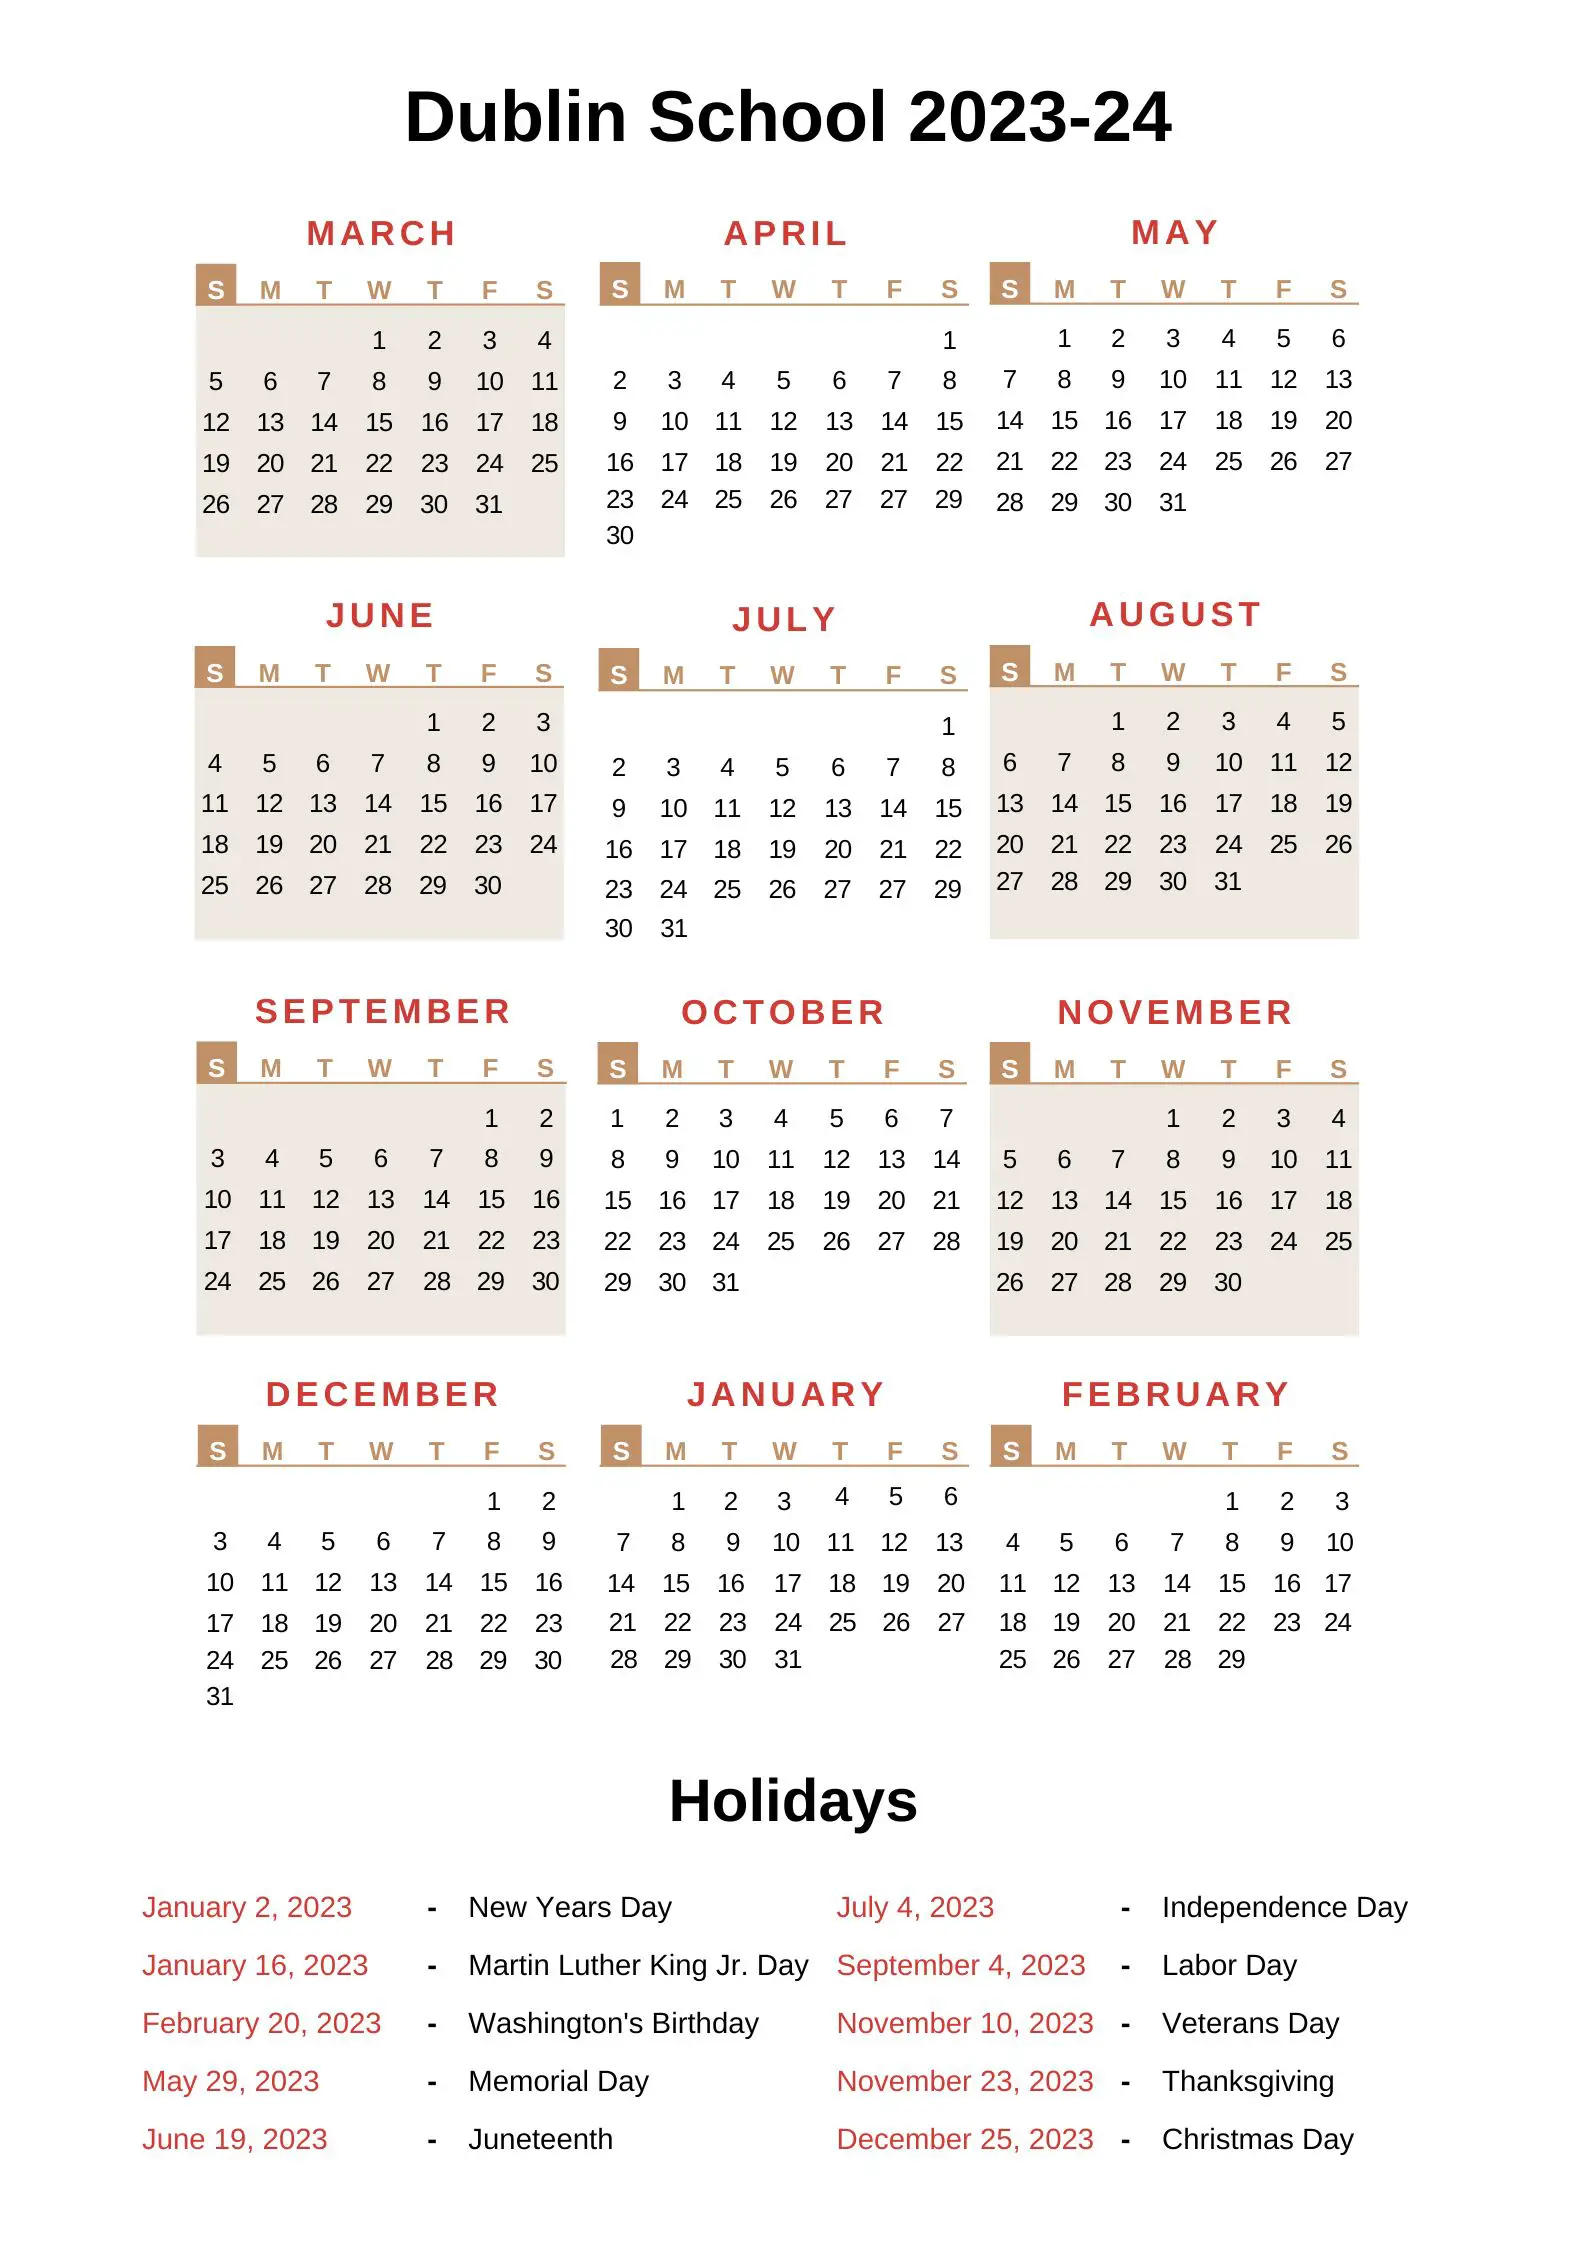 Dublin City Schools Calendar 2023-24 With Holidays